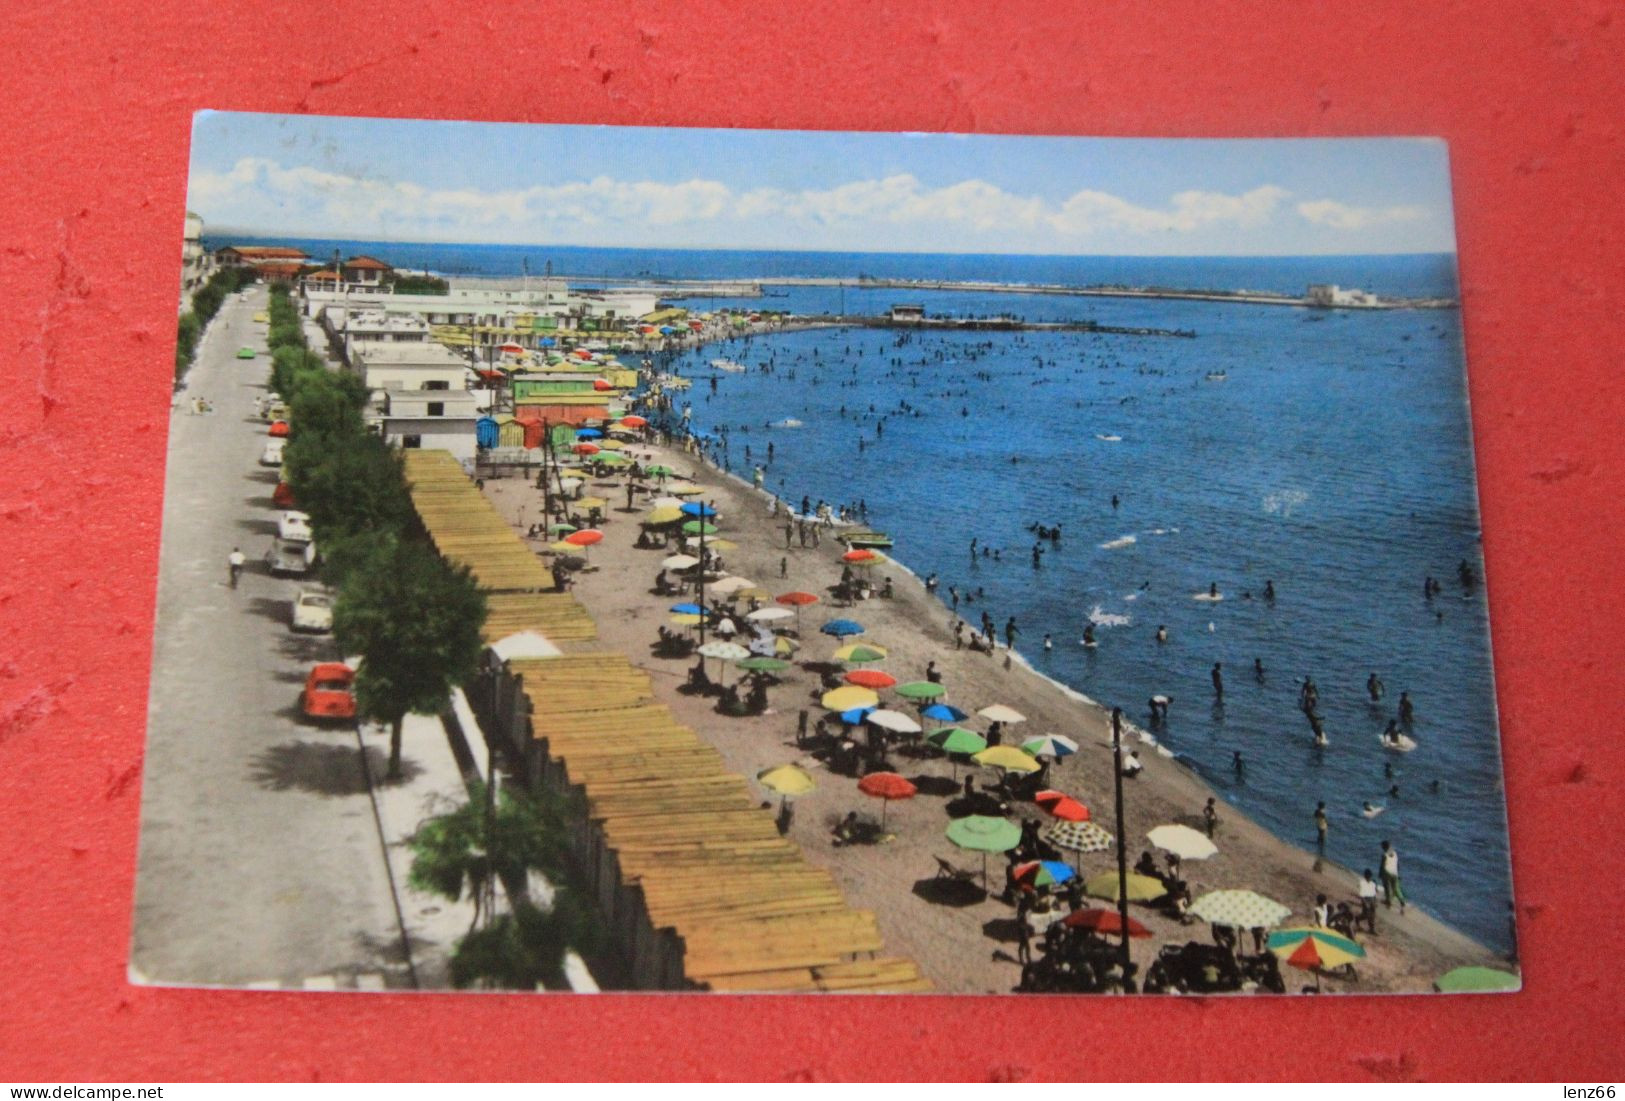 Crotone Lungomare E Spiaggia 1964 - Crotone